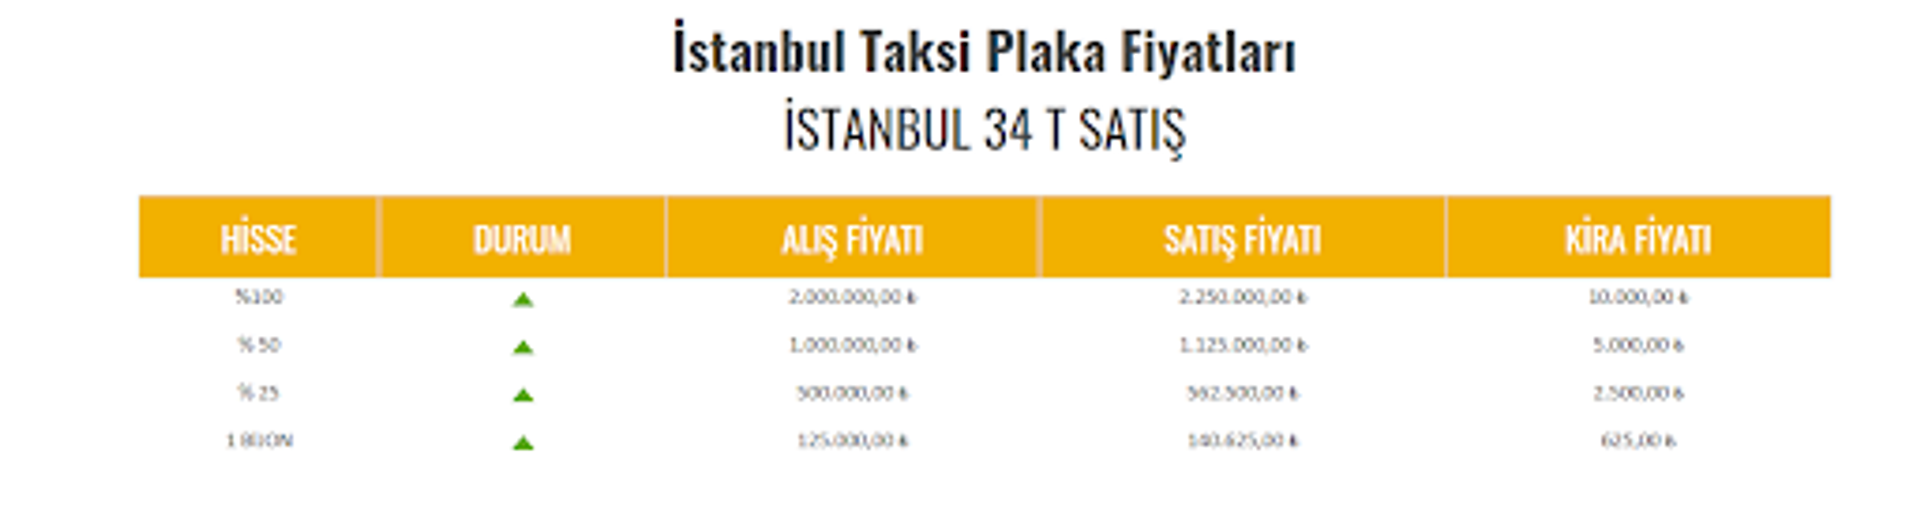 Mevcut durumda taksi plakası hisseleri bijon üzerinden 16 hisseye kadar çıkabiliyor - Sputnik Türkiye, 1920, 29.10.2021